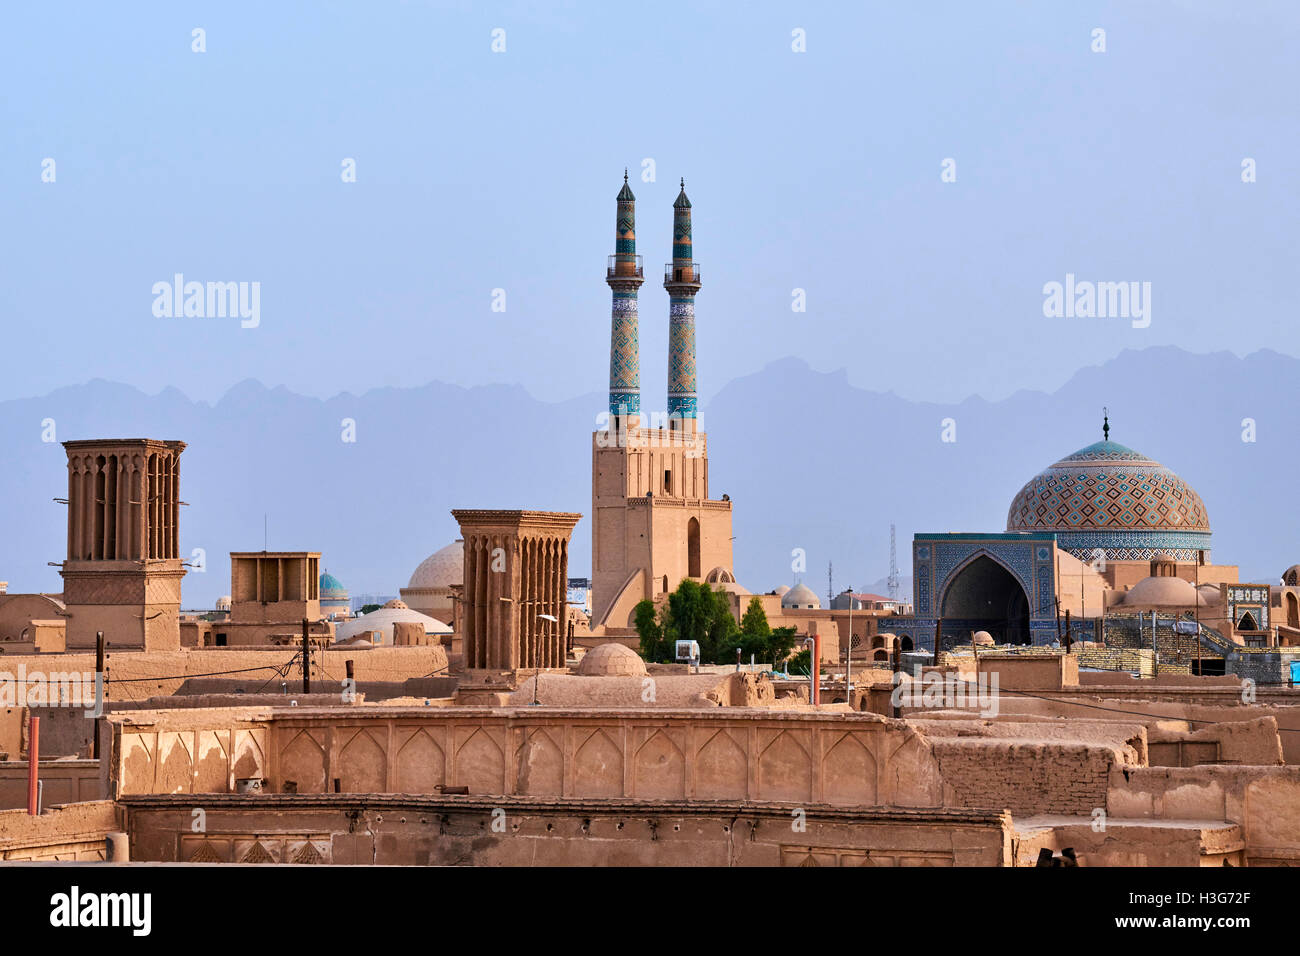 La province de Yazd, Iran, Yazd, mosquée de vendredi, vue générale, les badgirs ou tours à vent Banque D'Images